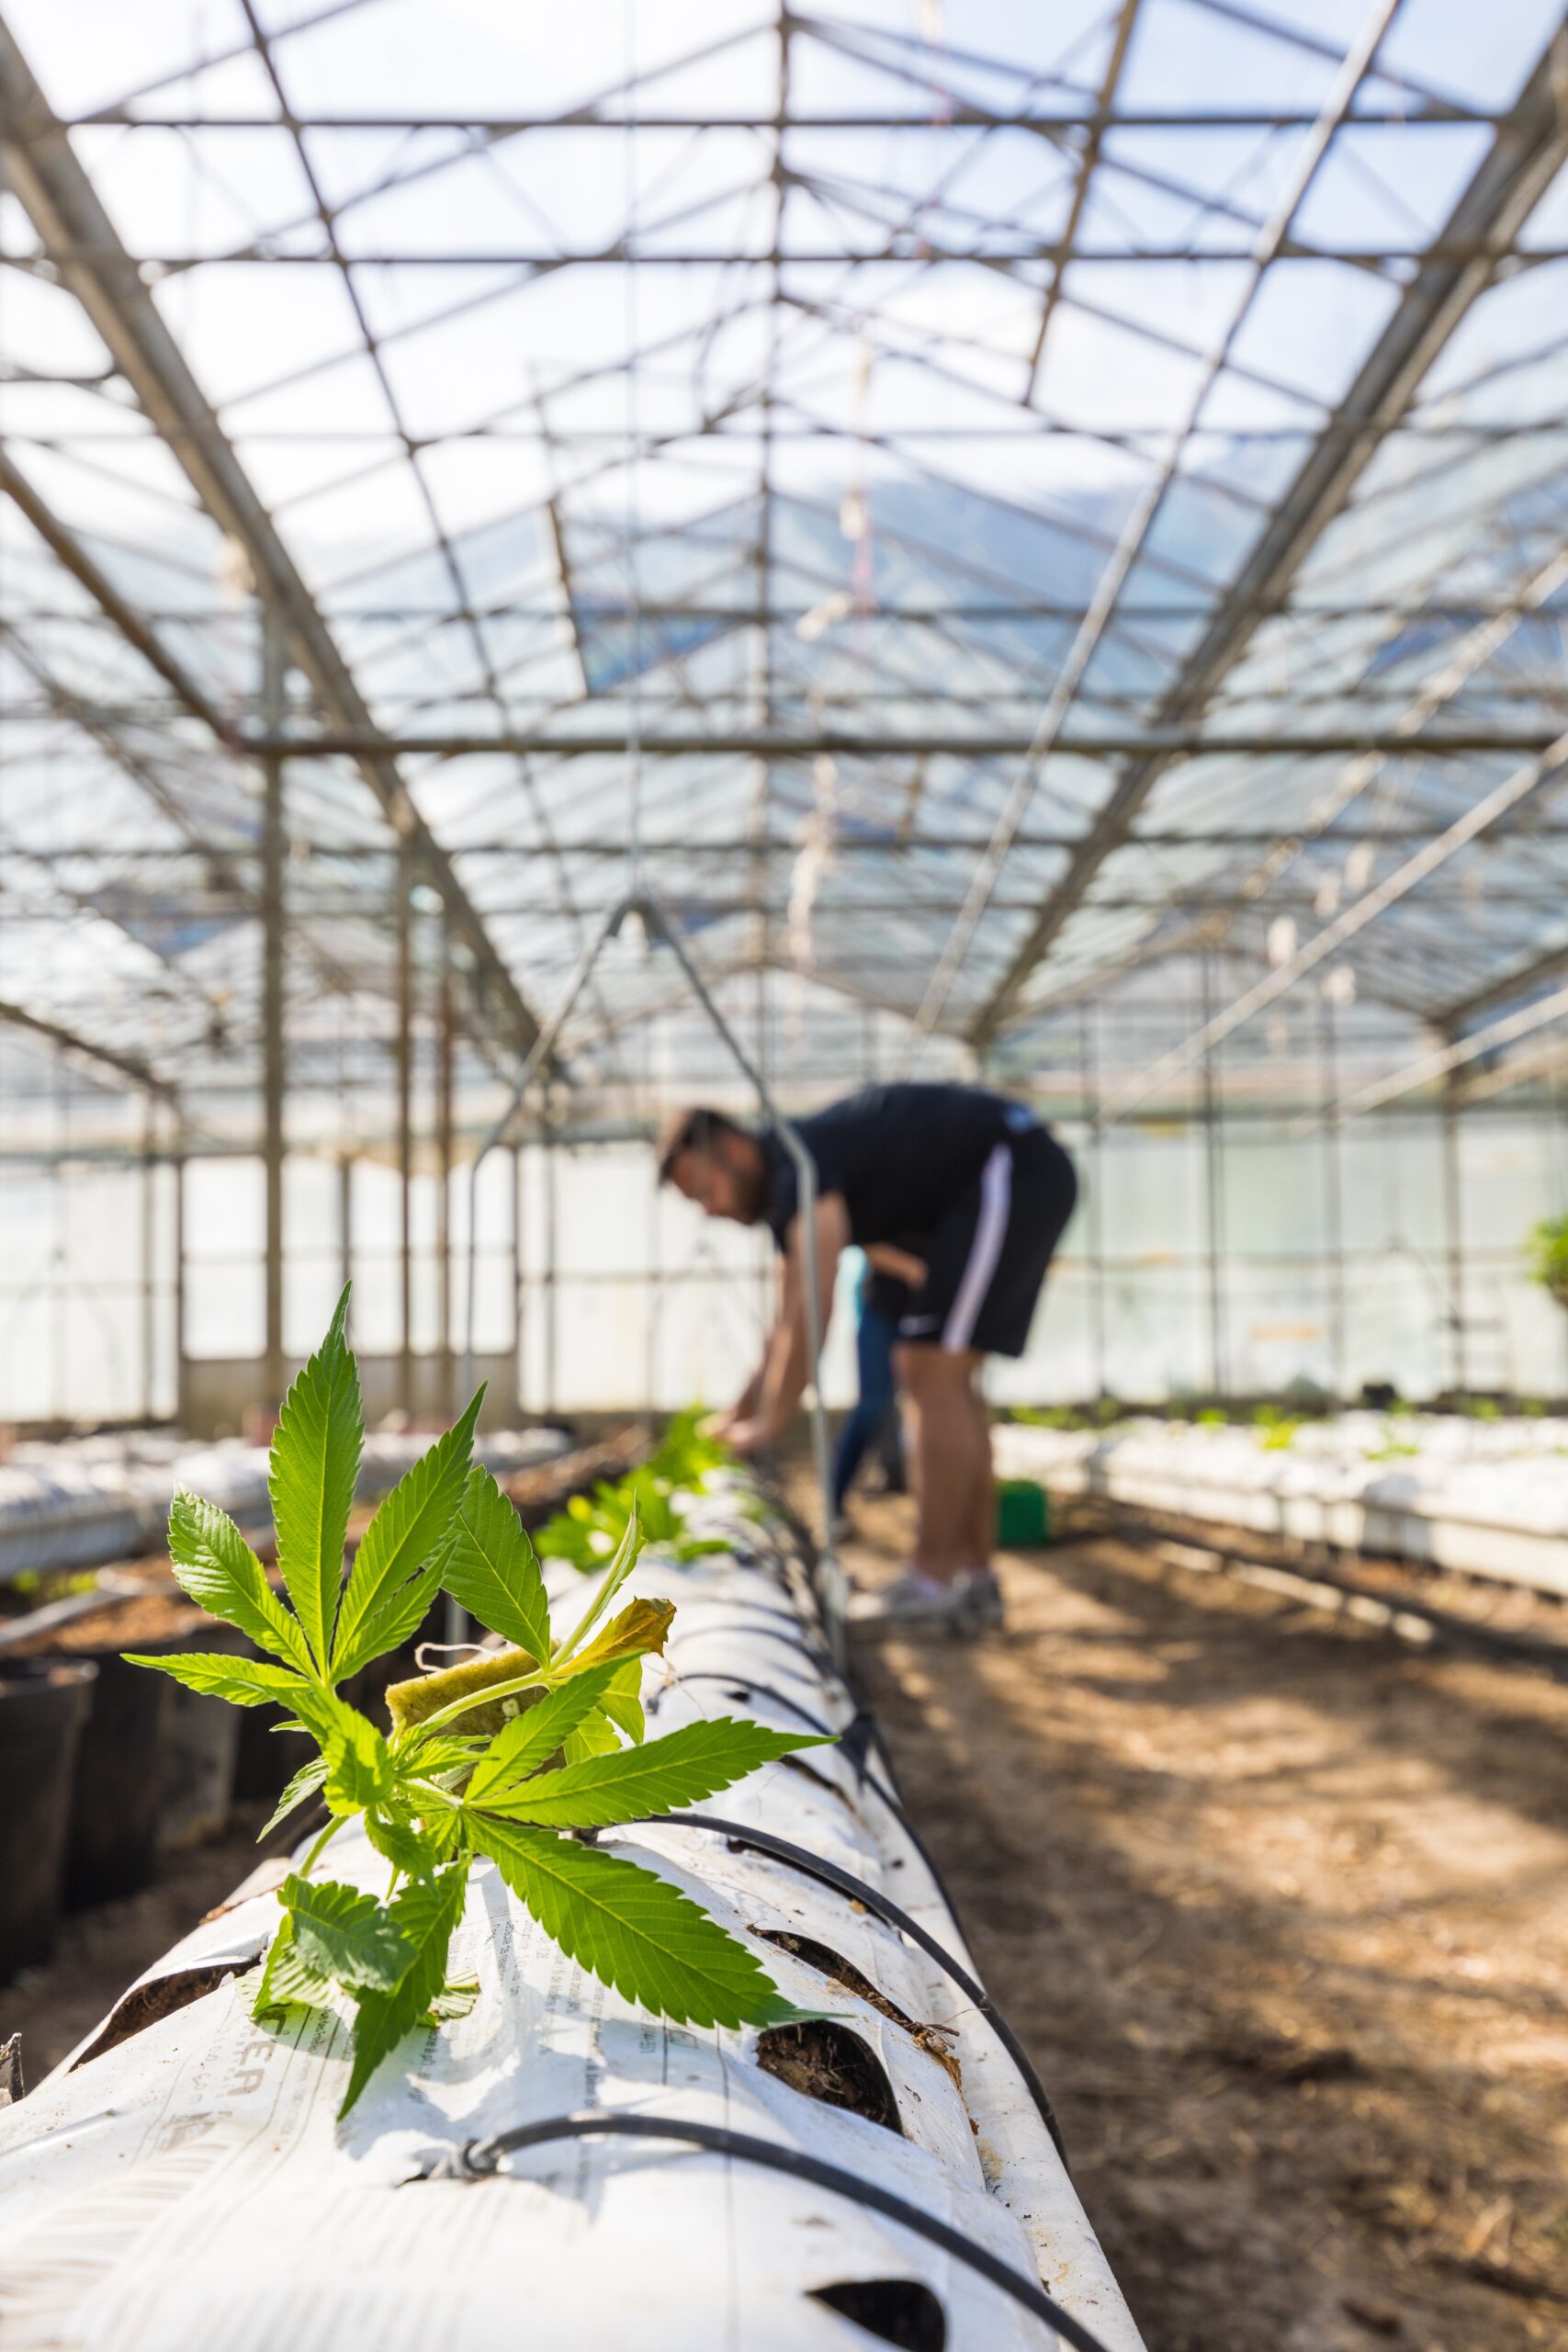 Vereinsmitglied in einem Gewächshaus, Arbeitet an den Cannabispflanzen.